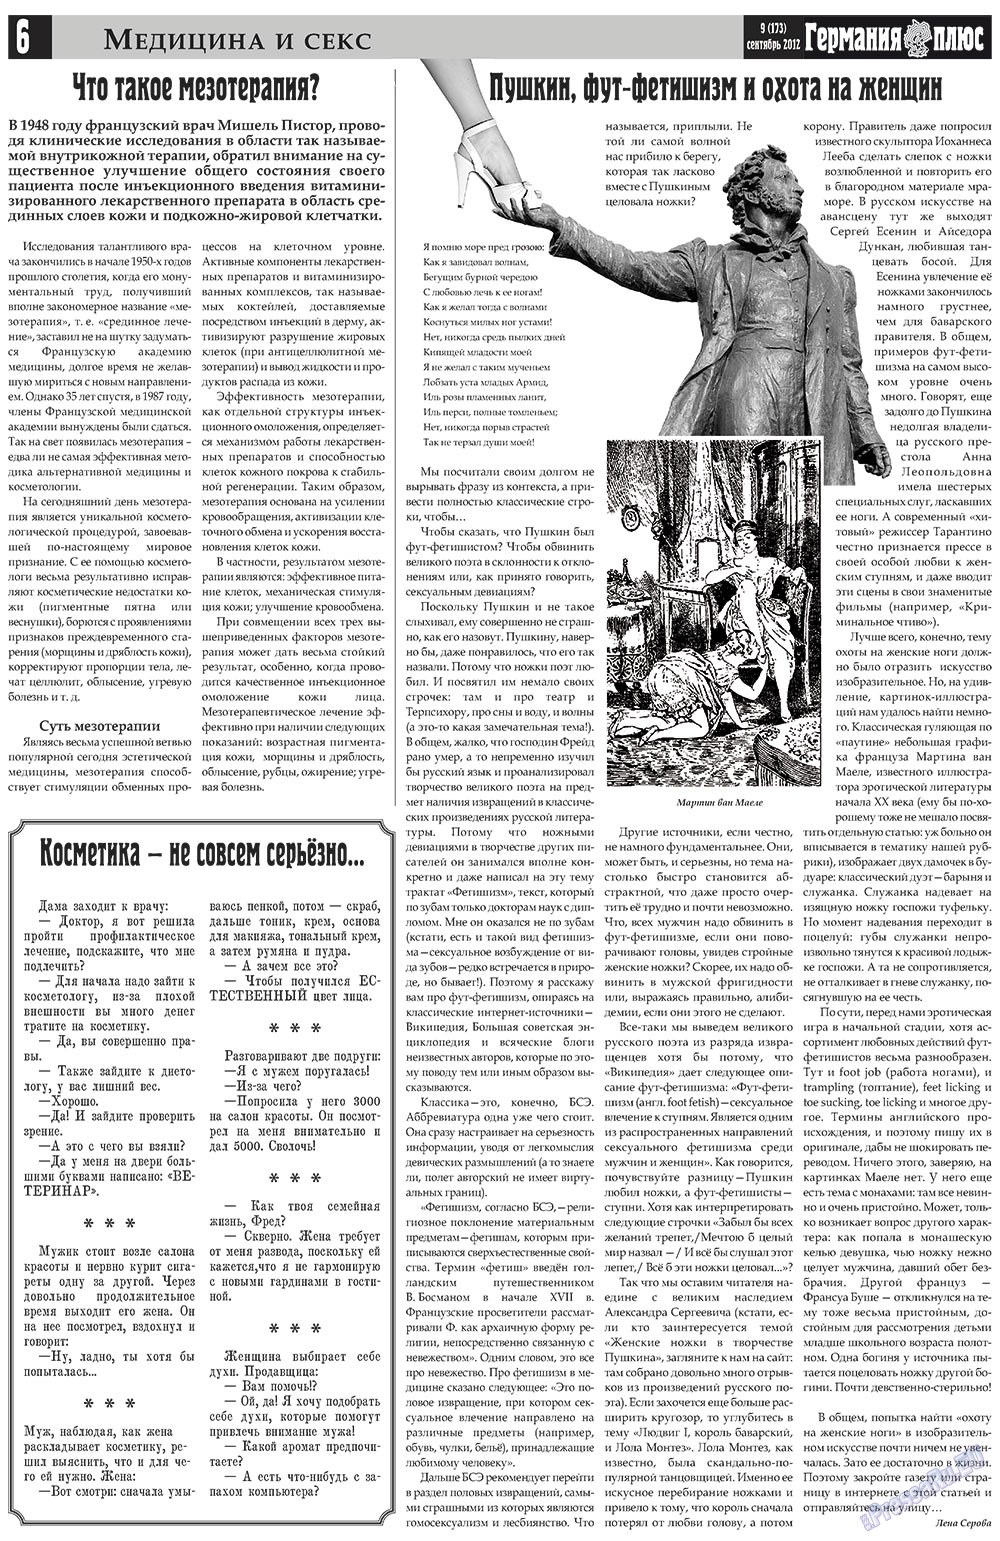 Германия плюс, газета. 2012 №9 стр.6